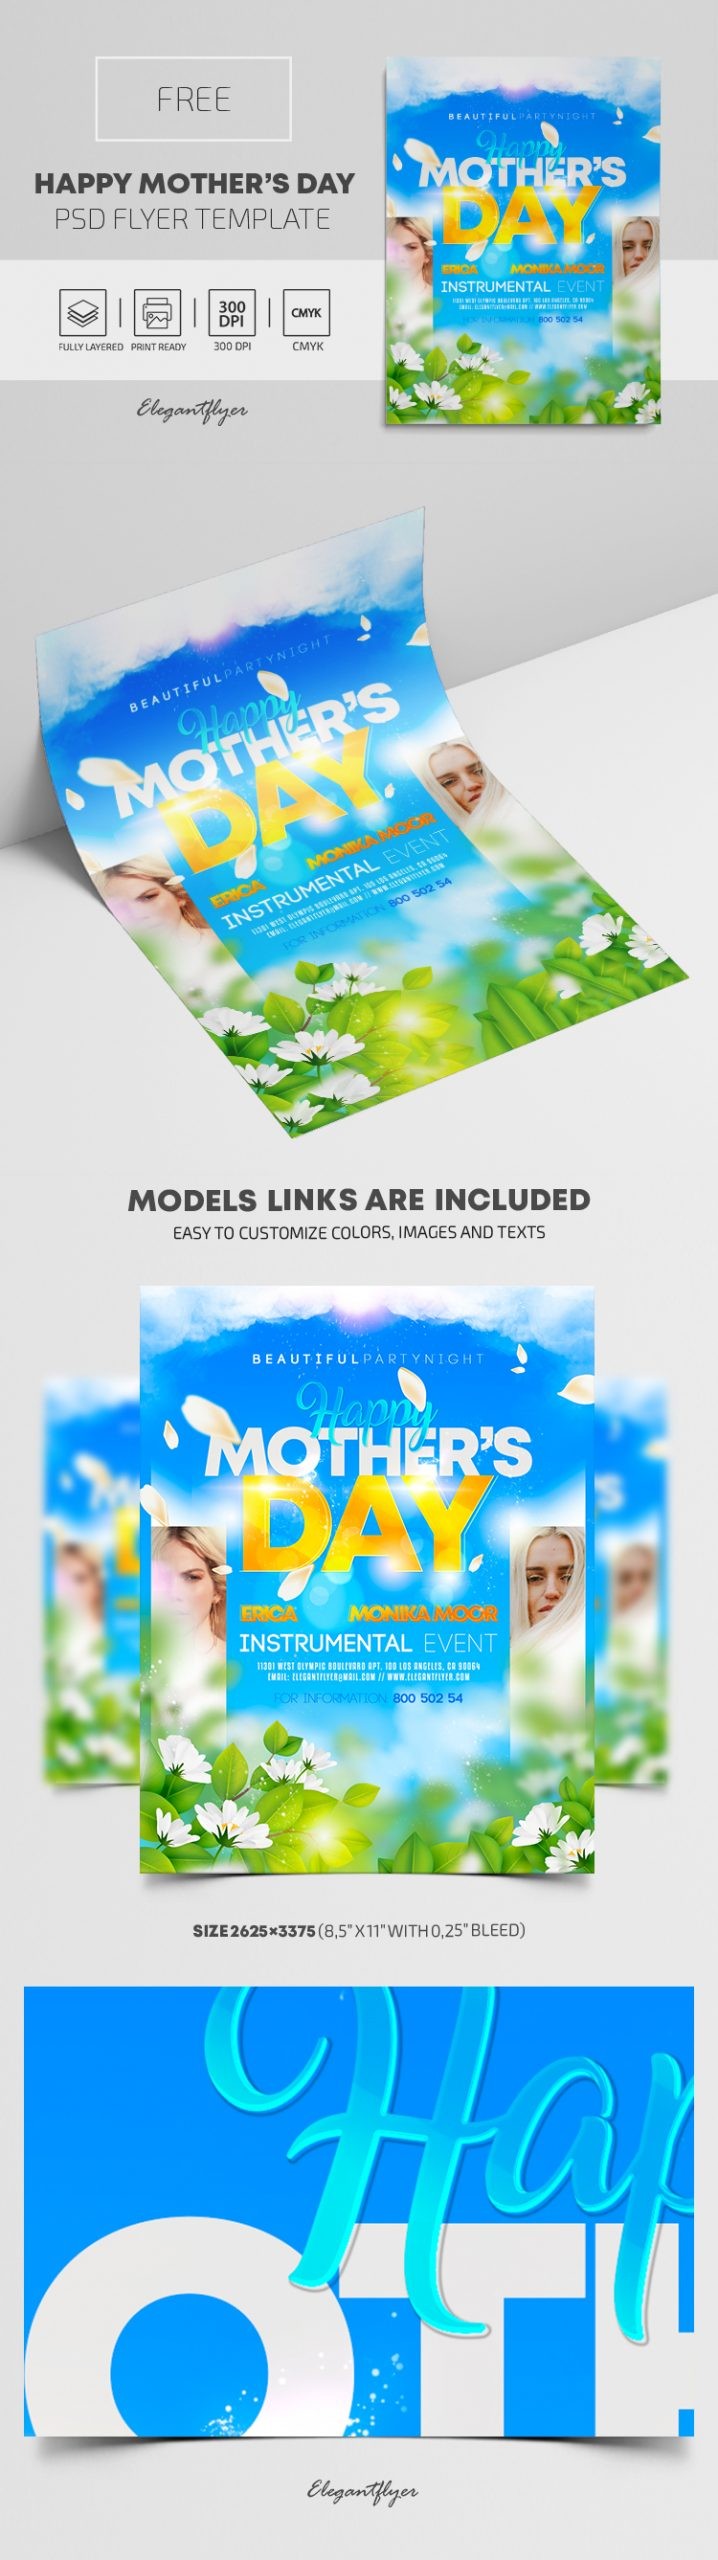 Szczęśliwego Dnia Matki! Lotniczy plakat. by ElegantFlyer